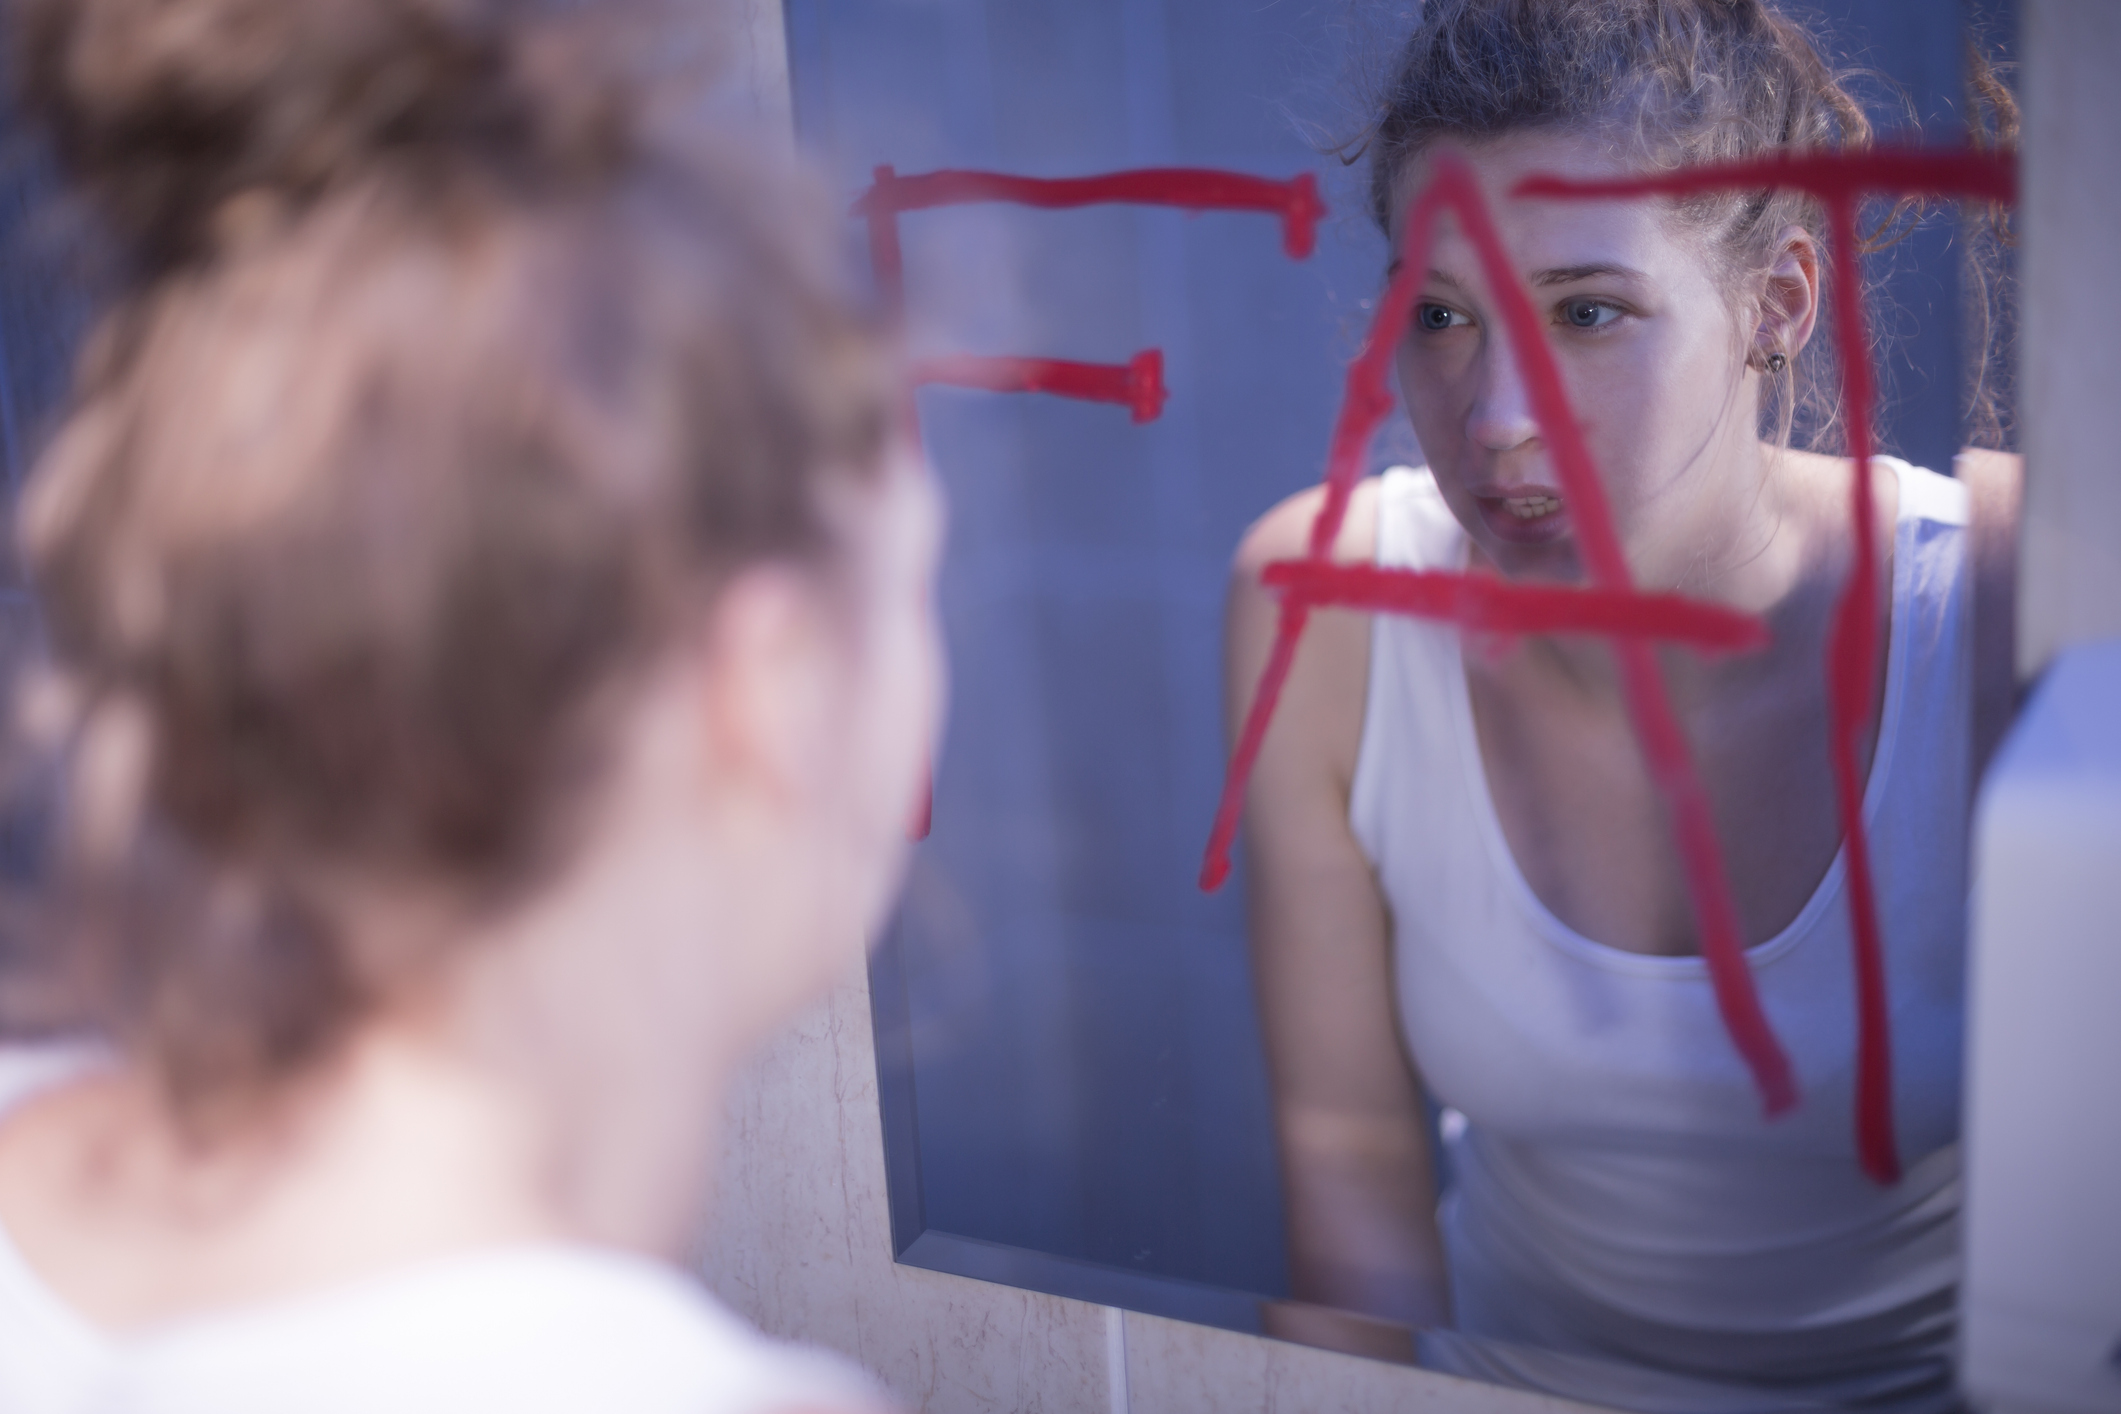 Mladá žena, ktorá sa pri pohľade do zrkadla vidí ako tučná